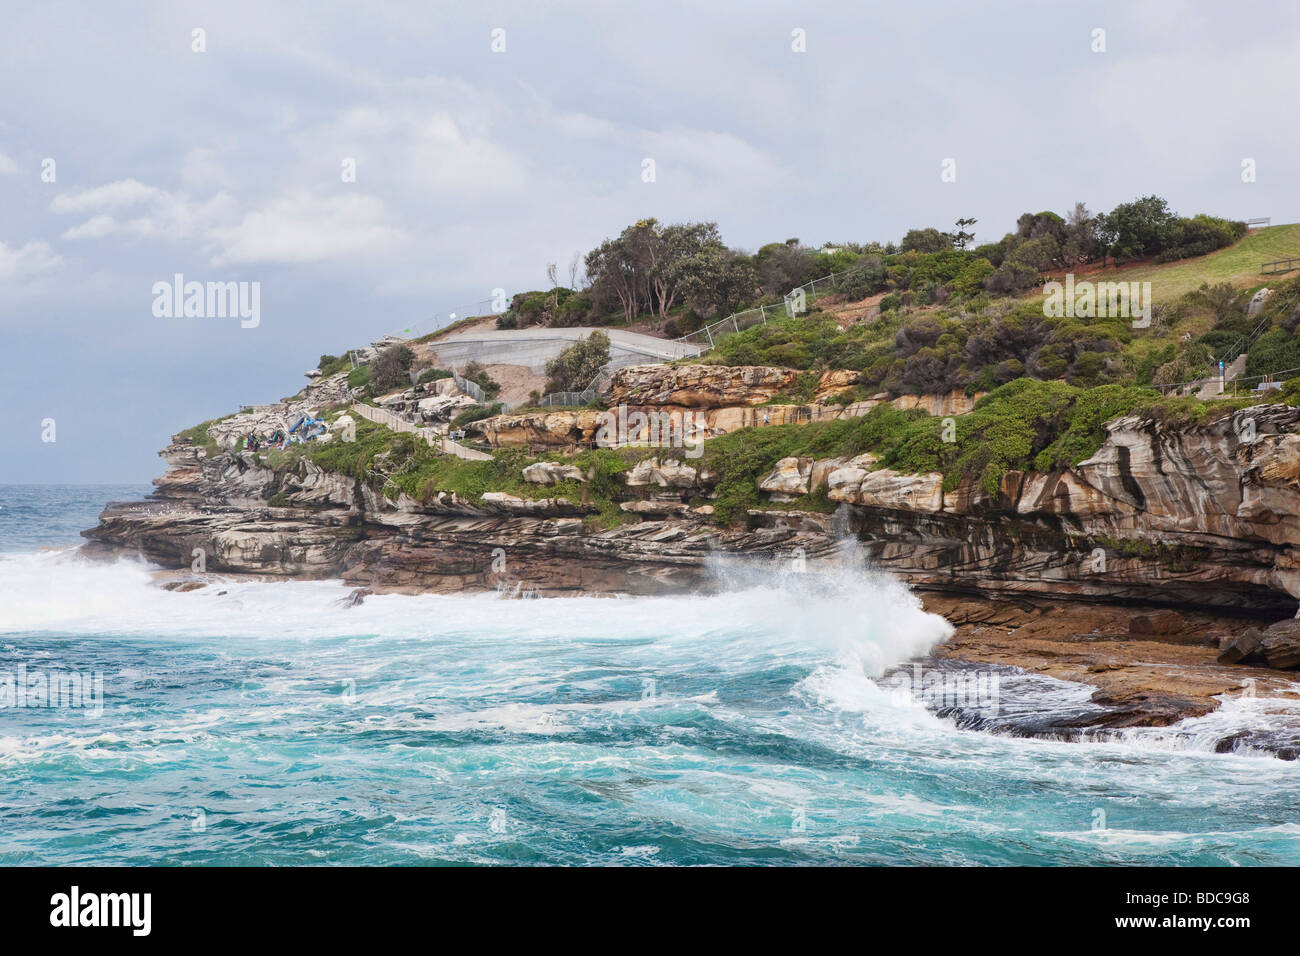 Sydney coast along the coastal walk from Bondi Beach Stock Photo